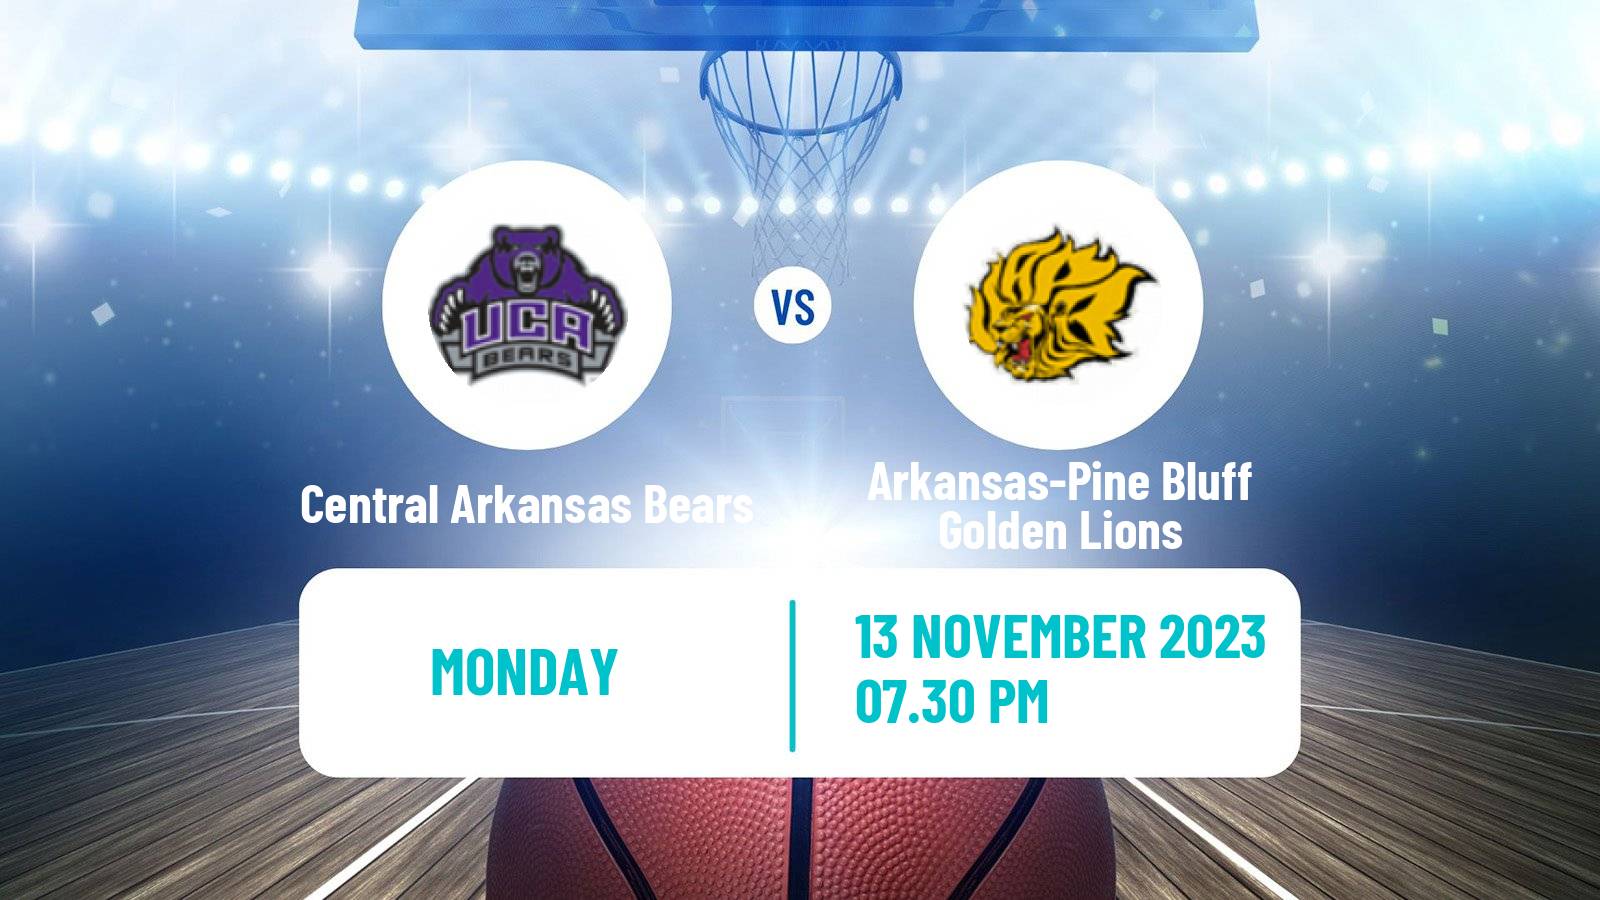 Basketball NCAA College Basketball Central Arkansas Bears - Arkansas-Pine Bluff Golden Lions